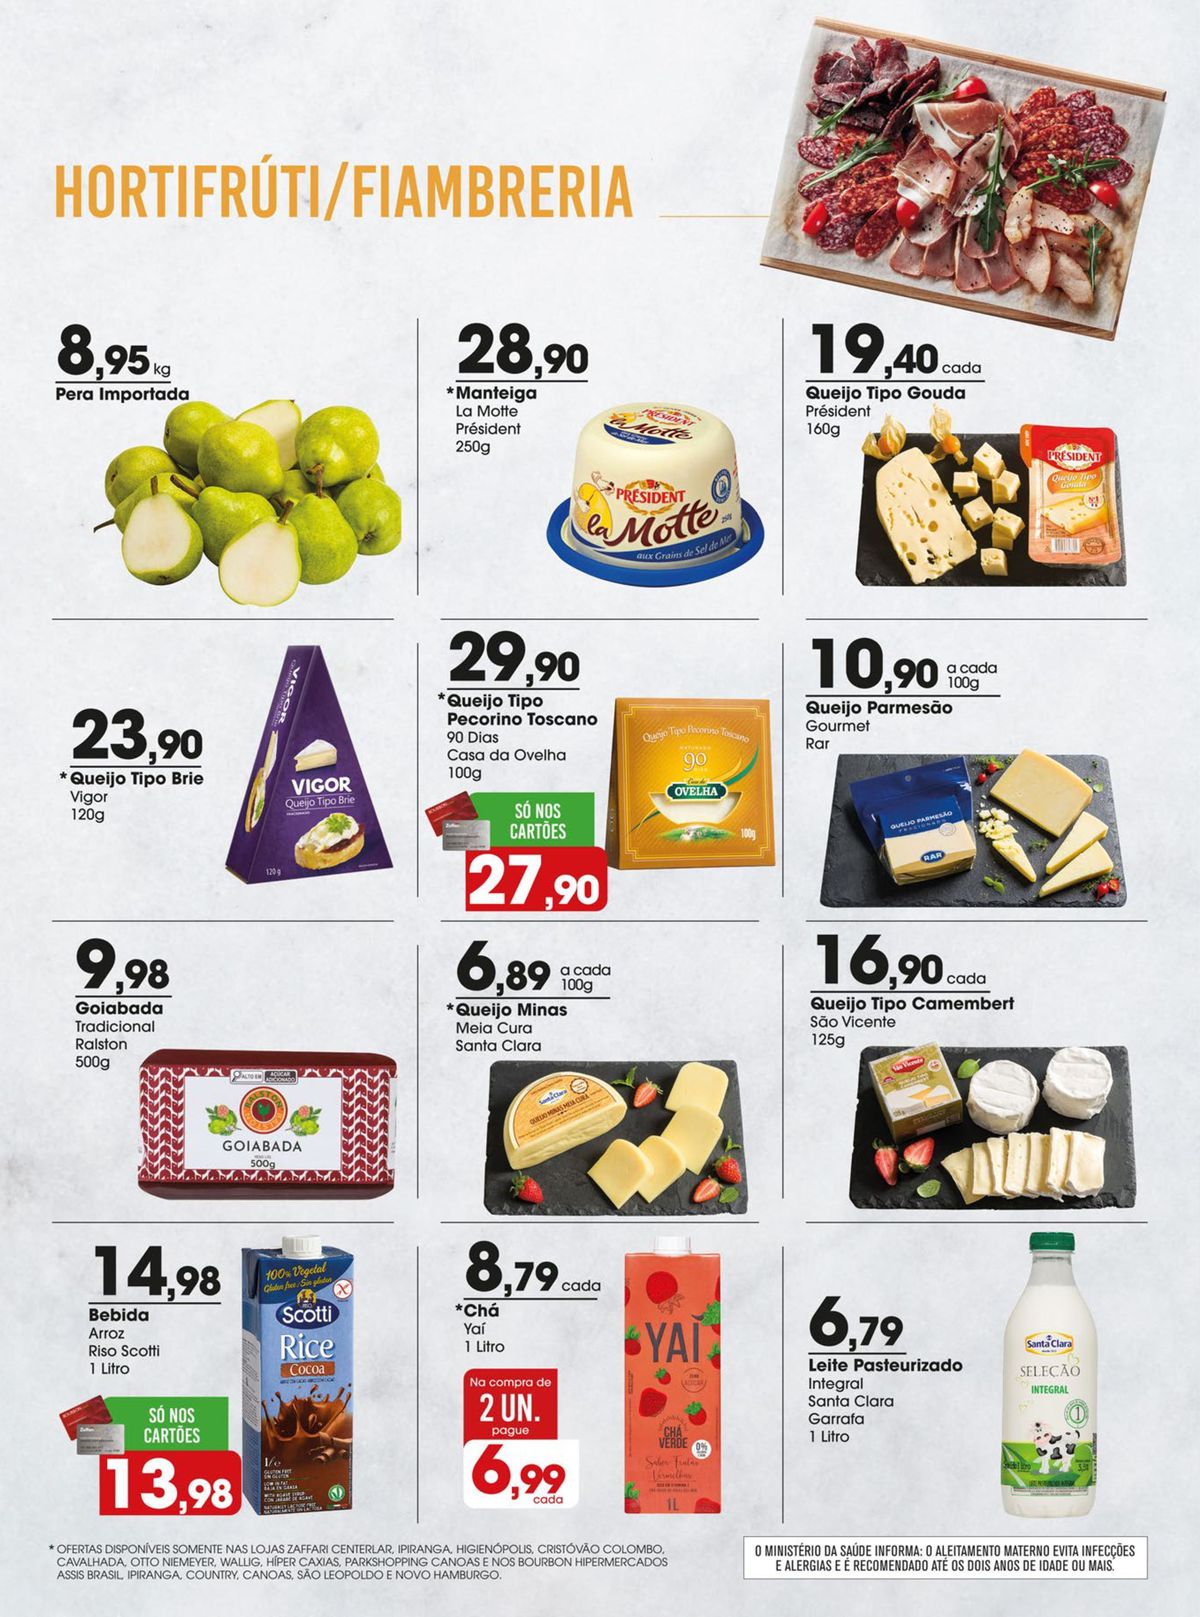 Ofertas em queijos e bebidas na seção de Supermercados